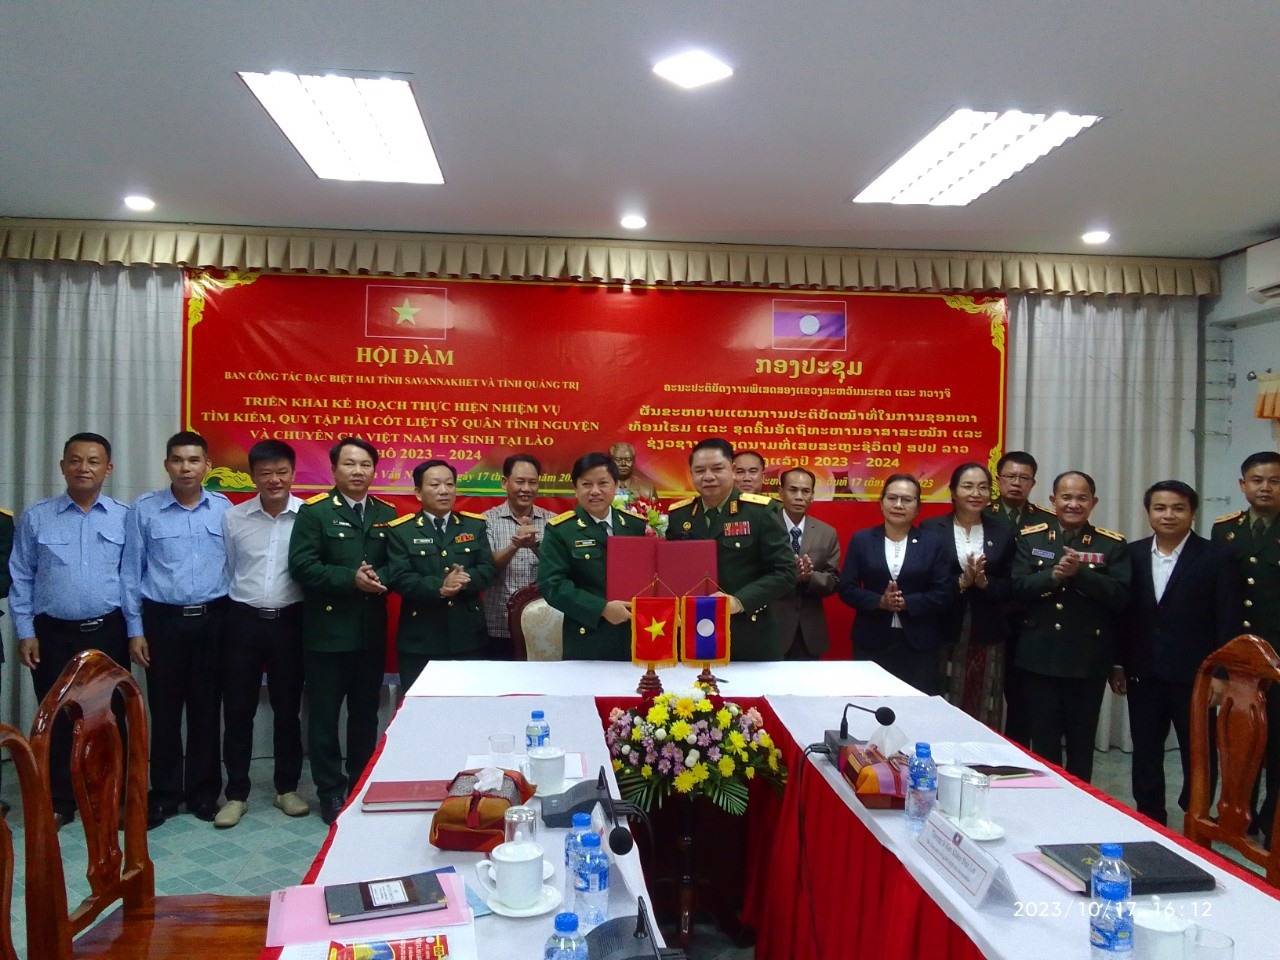 Ban Công tác đặc biệt 2 tỉnh Quảng Trị - Savannakhet ký kết biên bản thỏa thuận tiếp tục thực hiện nhiệm vụ tìm kiếm, quy tập hài cốt liệt sĩ mùa khô 2023-2024 - Ảnh: Bá Hiếu